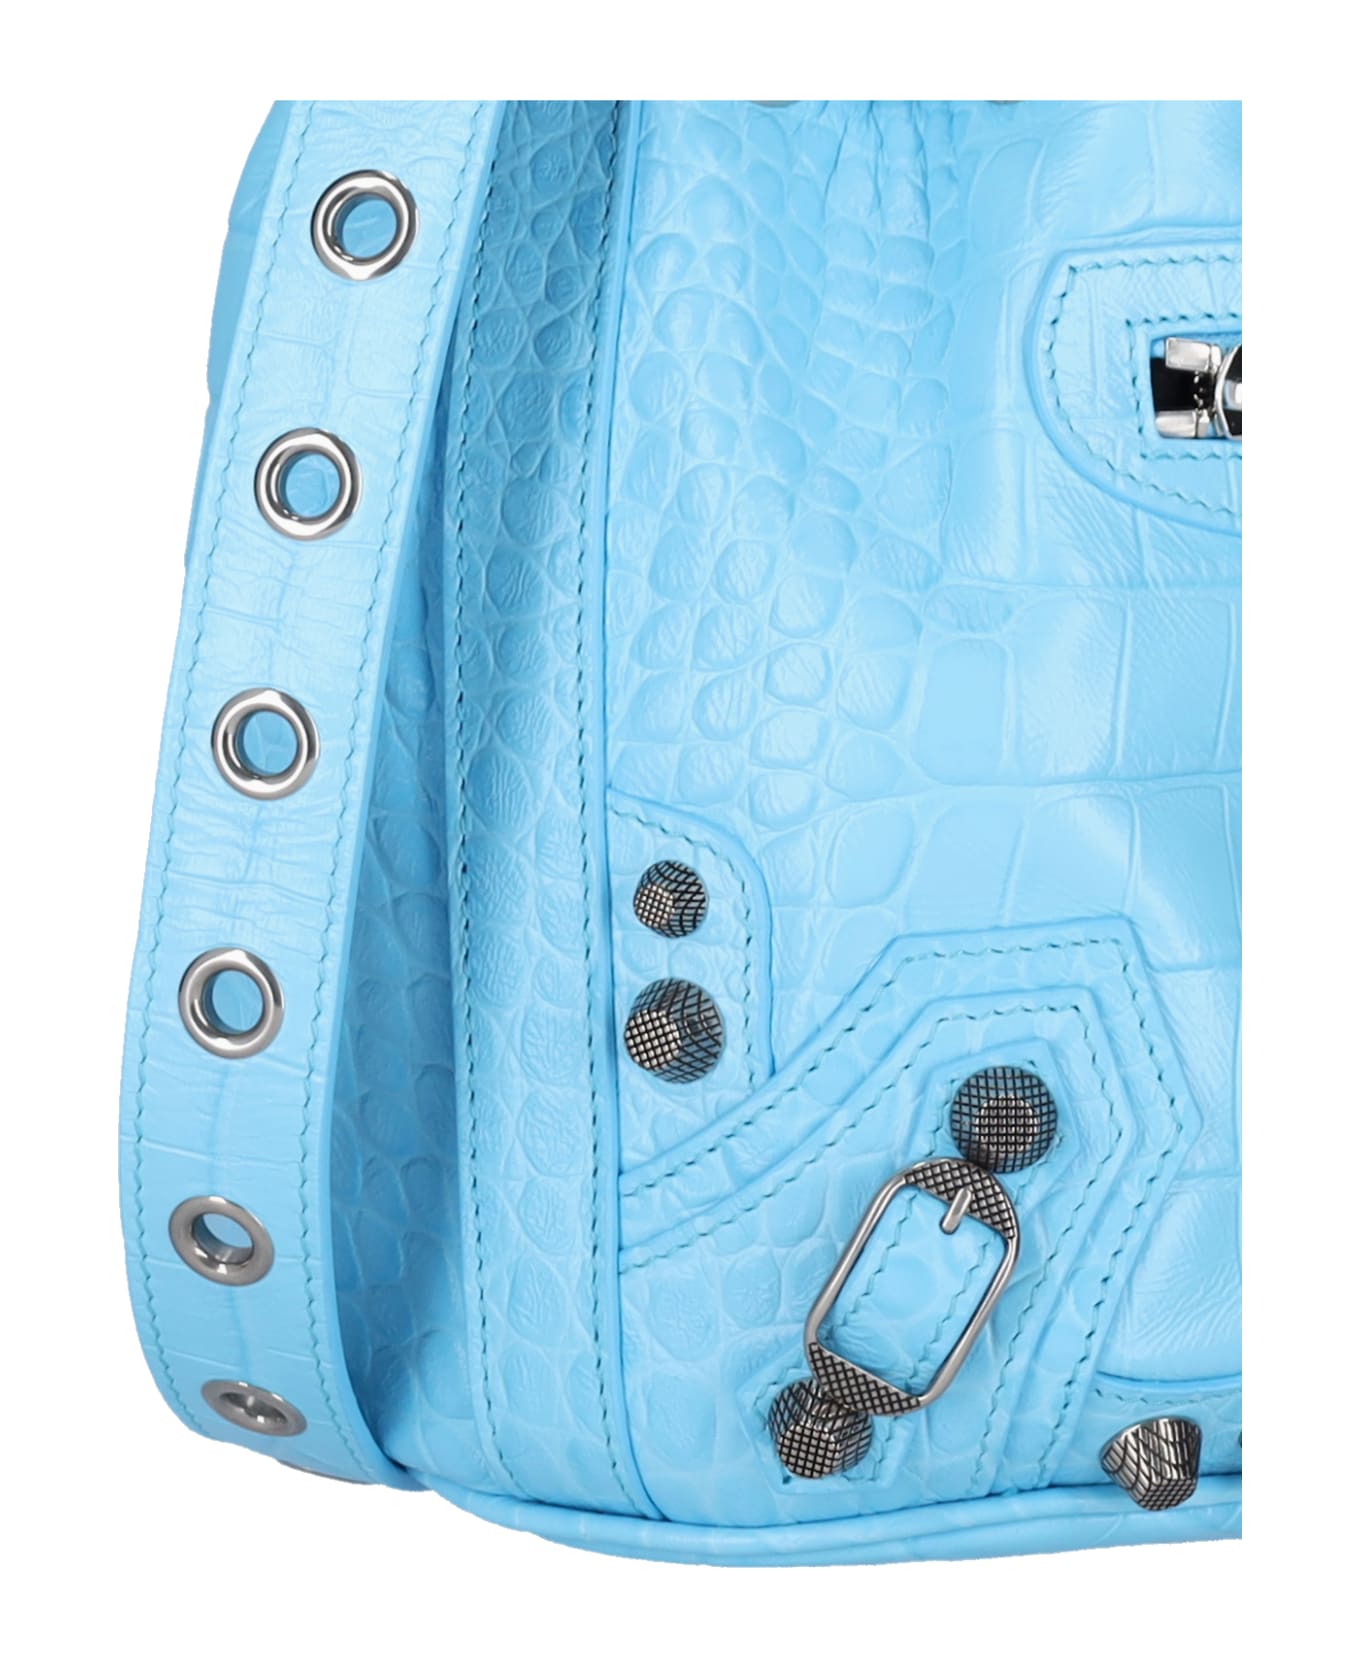 Balenciaga Le Cagole Xs Bucket Bag - Light blue トートバッグ